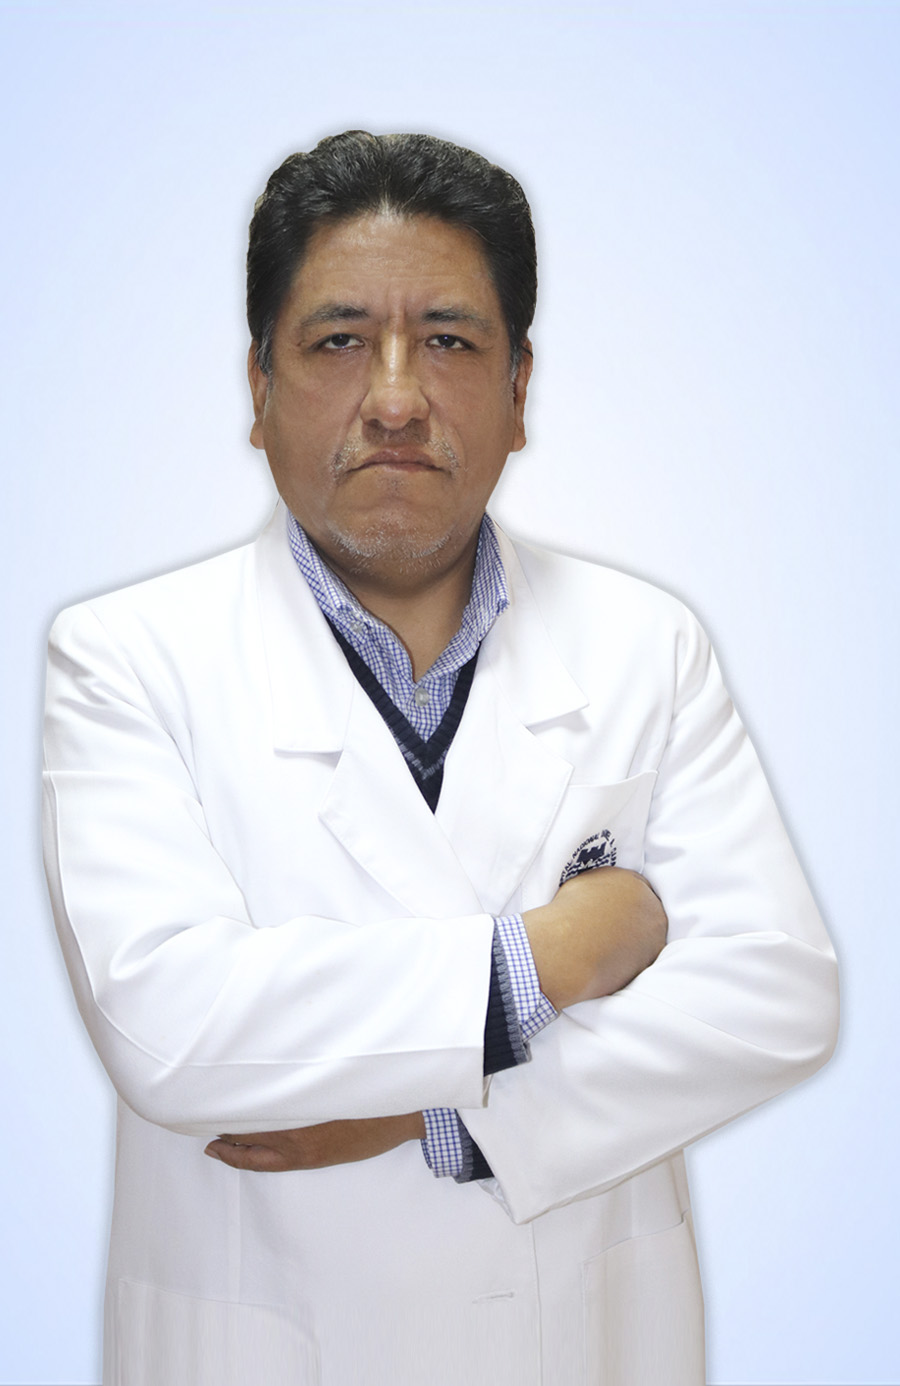 DR. BONIFACIO